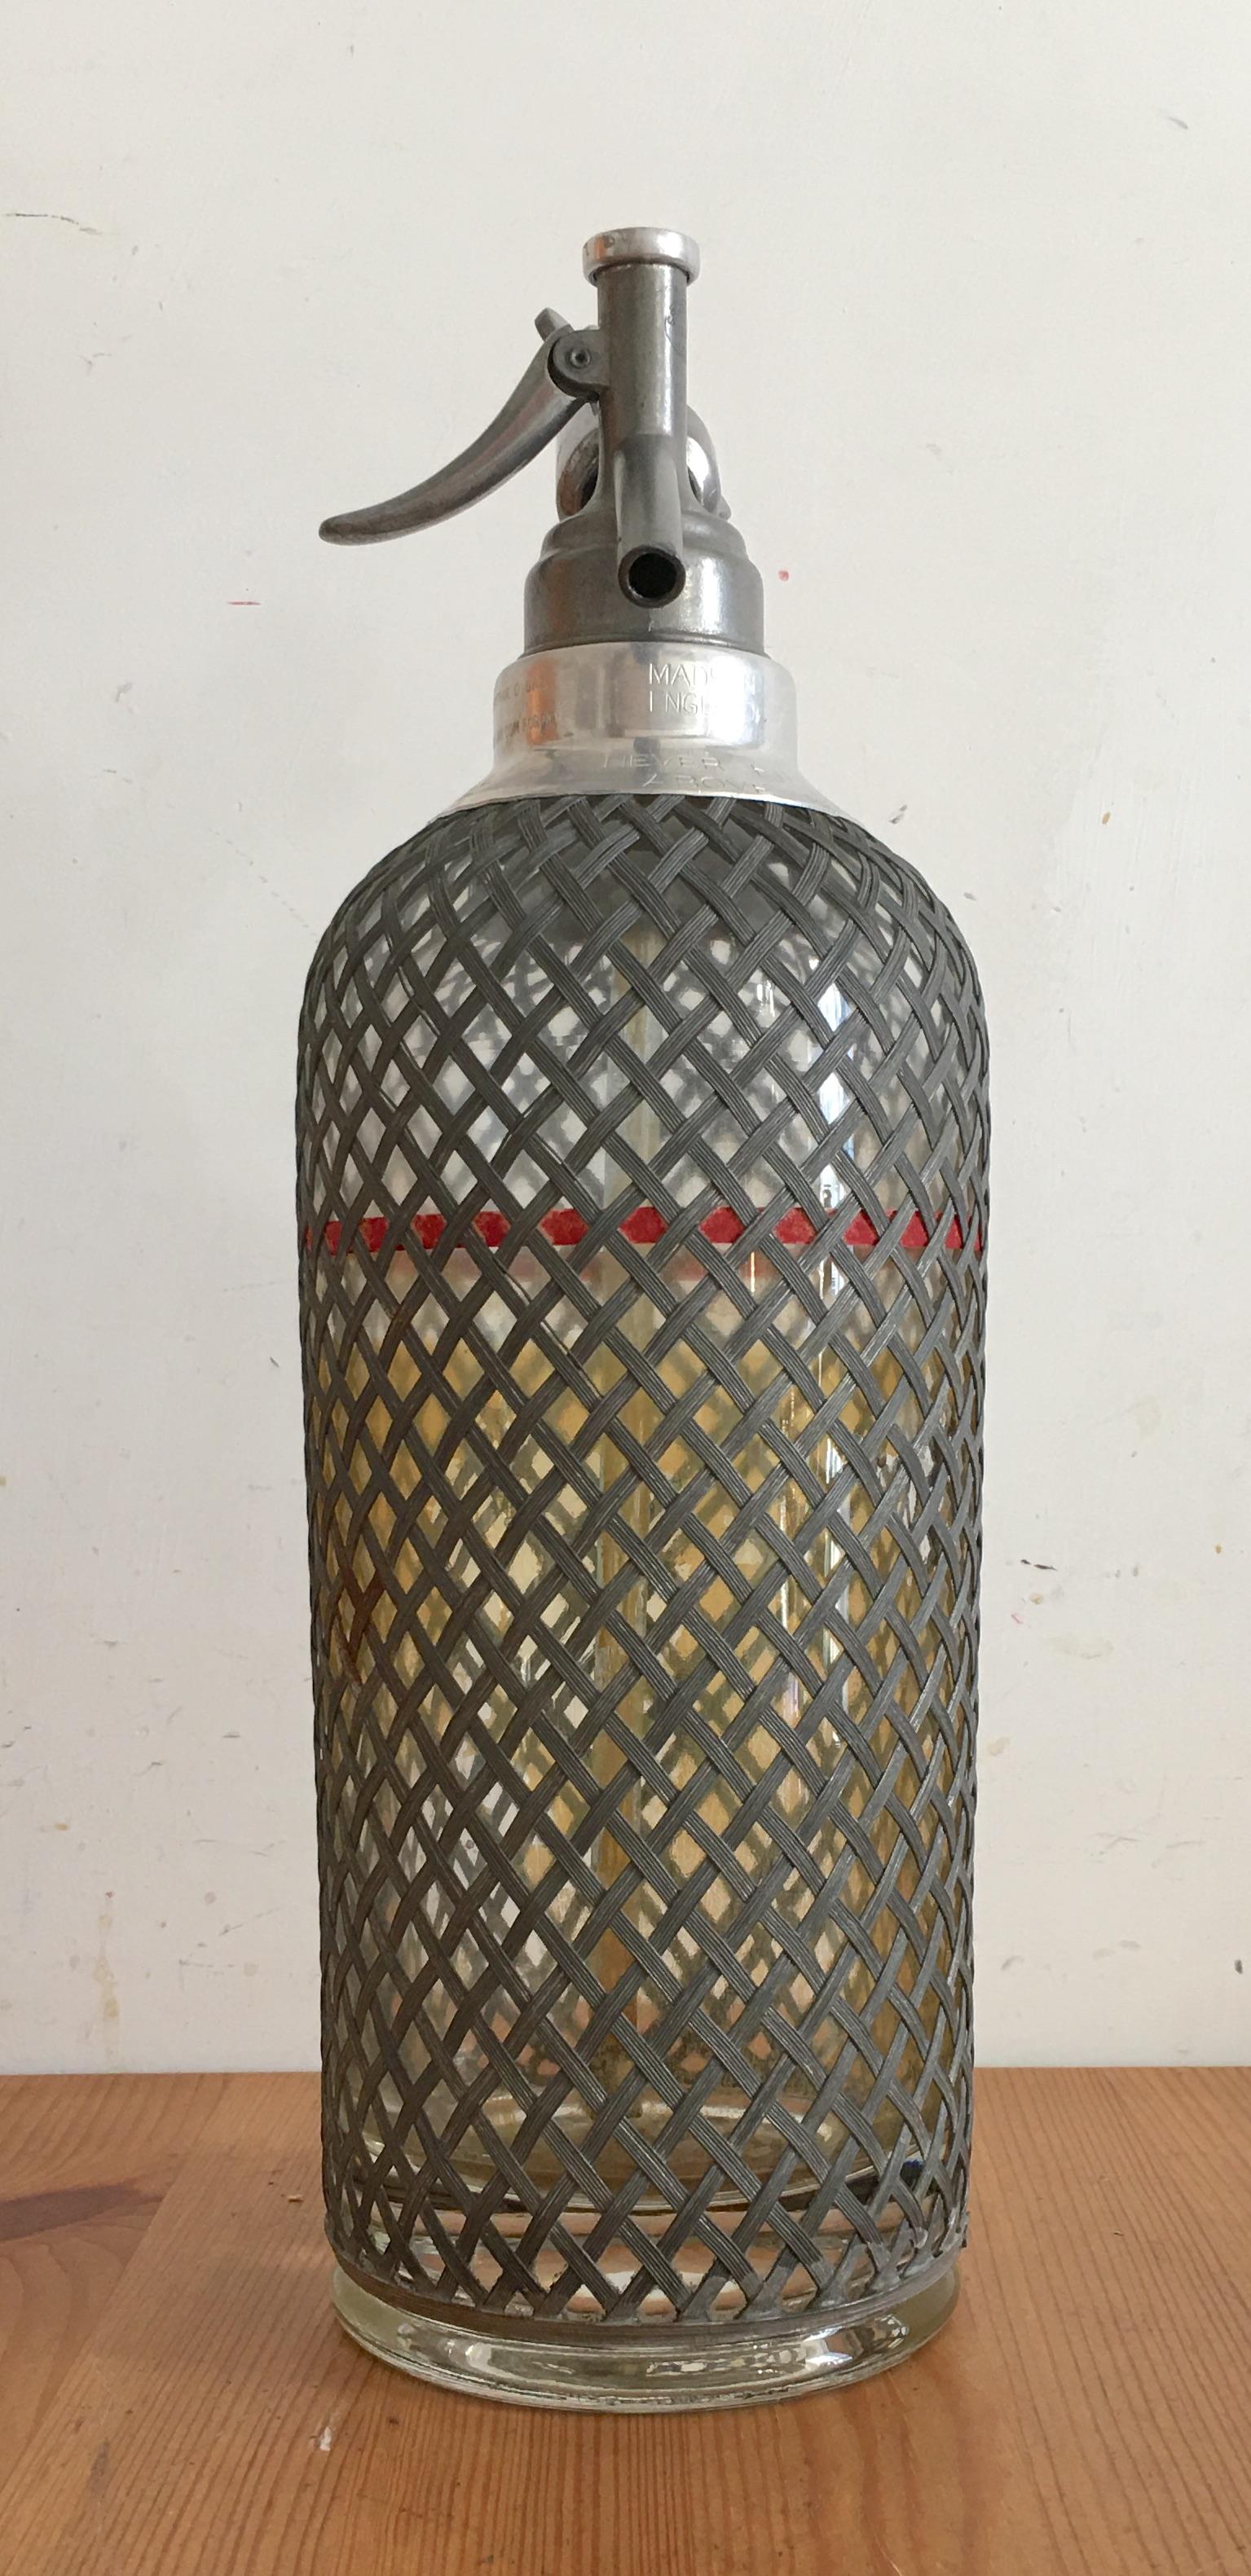 Bottiglia Seltzer in vetro ricoperto da rete di alluminio prodotta nel 20° secolo in buone condizioni, non collaudata nel funzionamento, oggetto da esposizione.